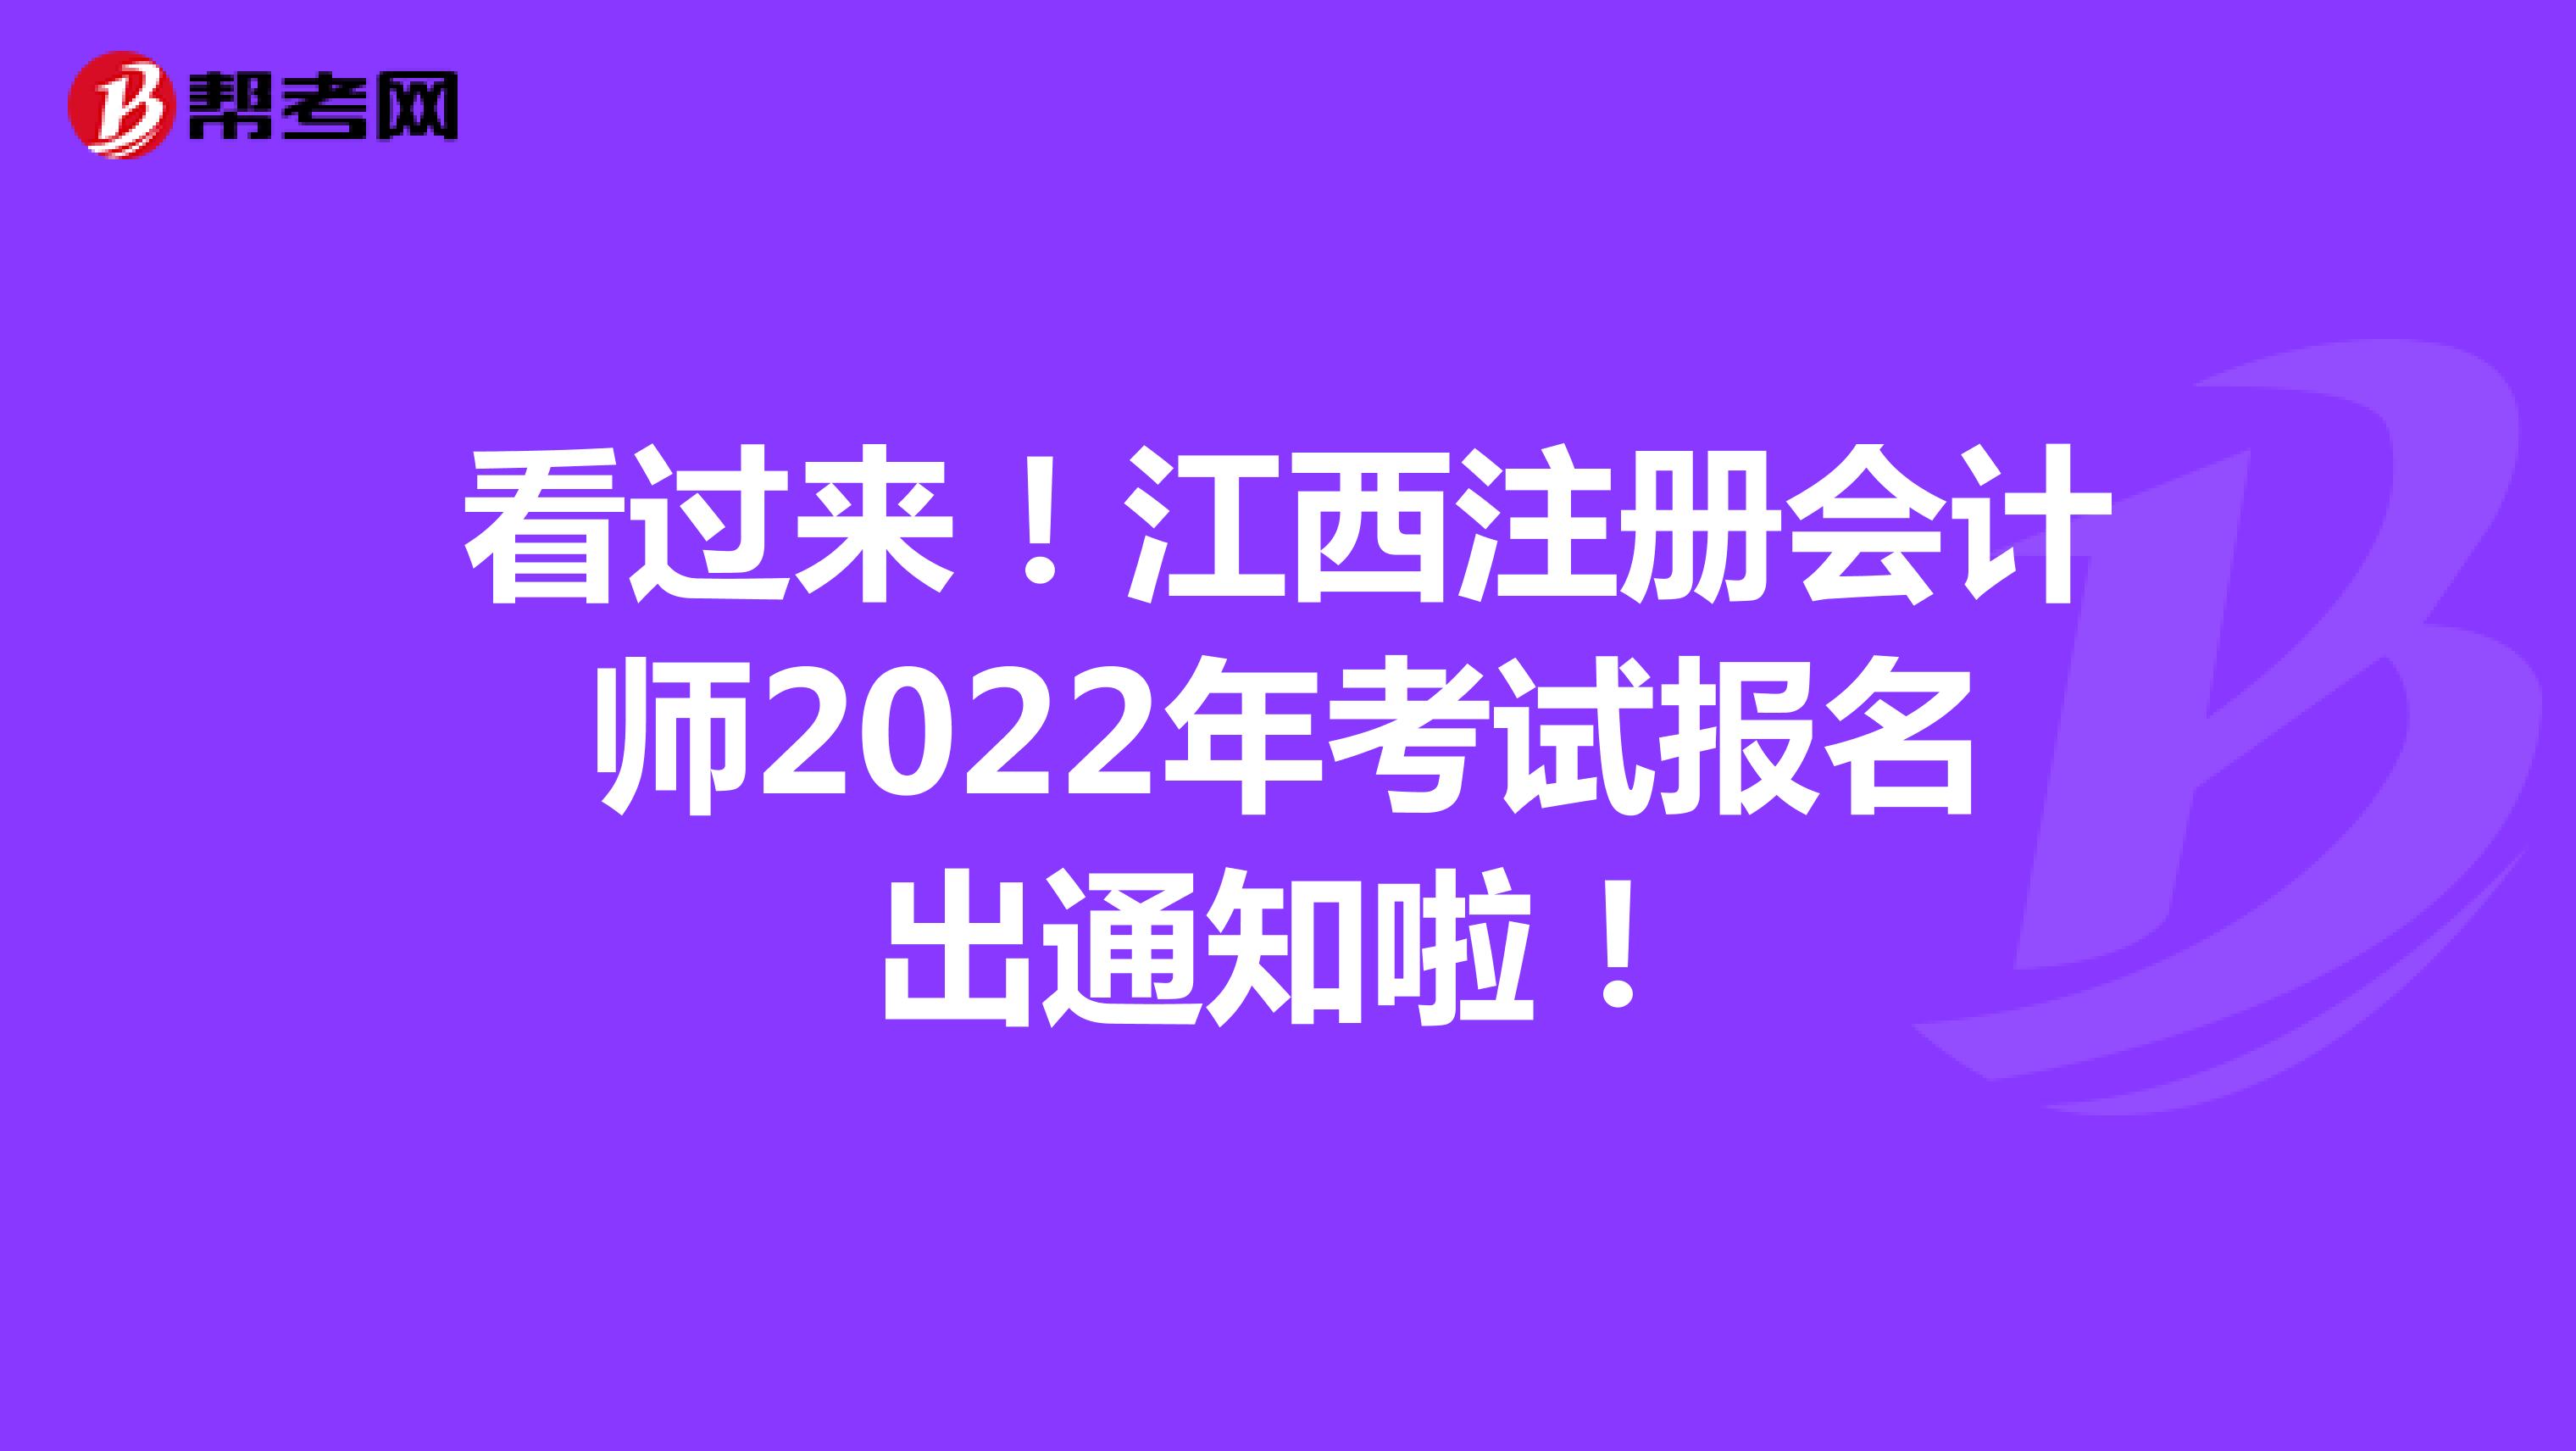 看过来！江西注册会计师2022年考试报名出通知啦！